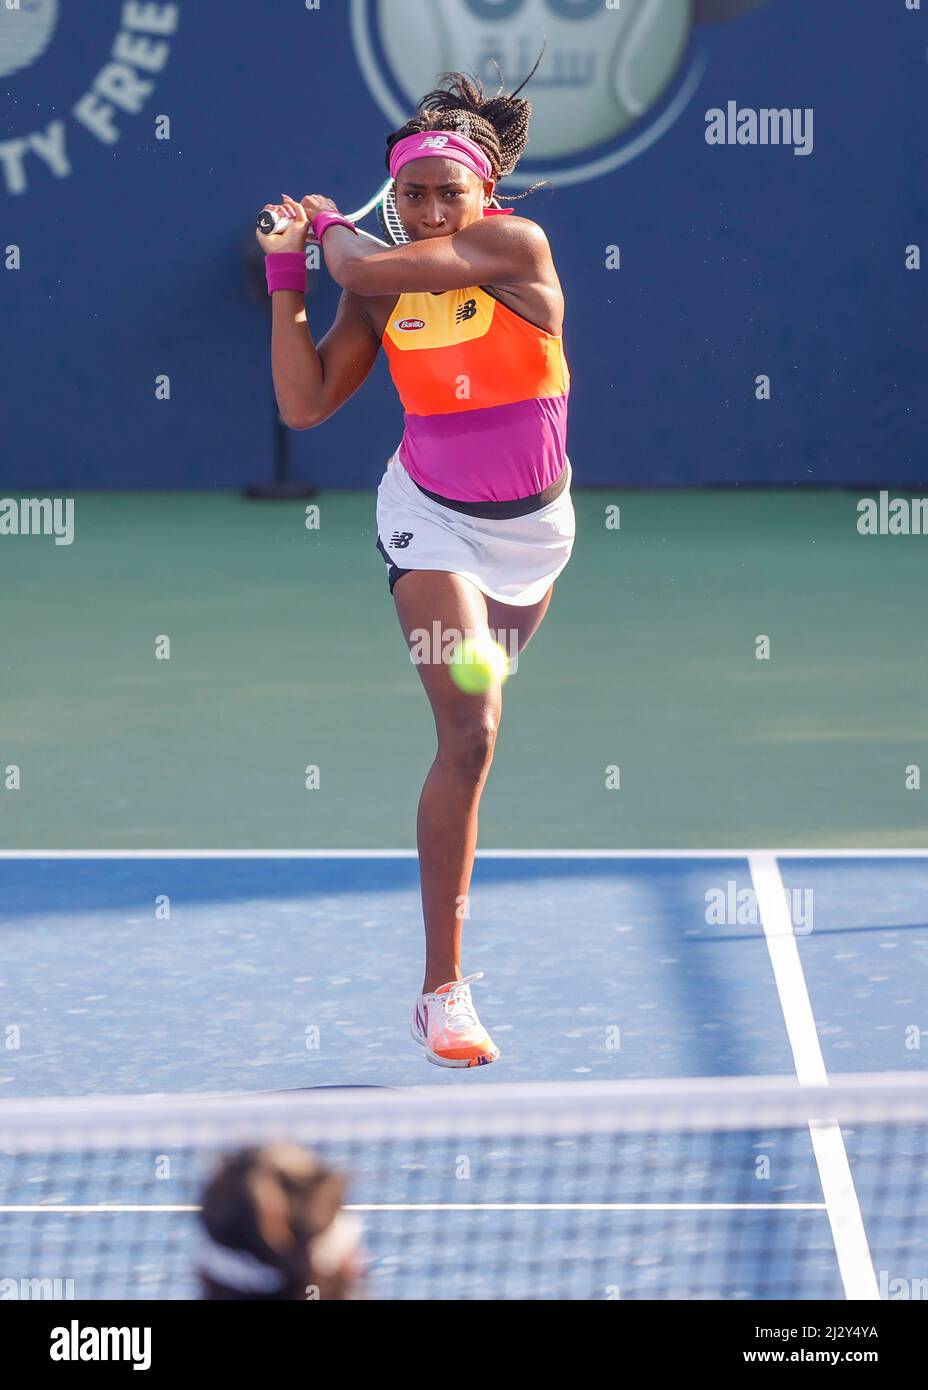 Le joueur américain de tennis Cori Gauff joue un coup de dos aux championnats de tennis de Dubaï 2022, Dubaï, Émirats arabes Unis. Banque D'Images